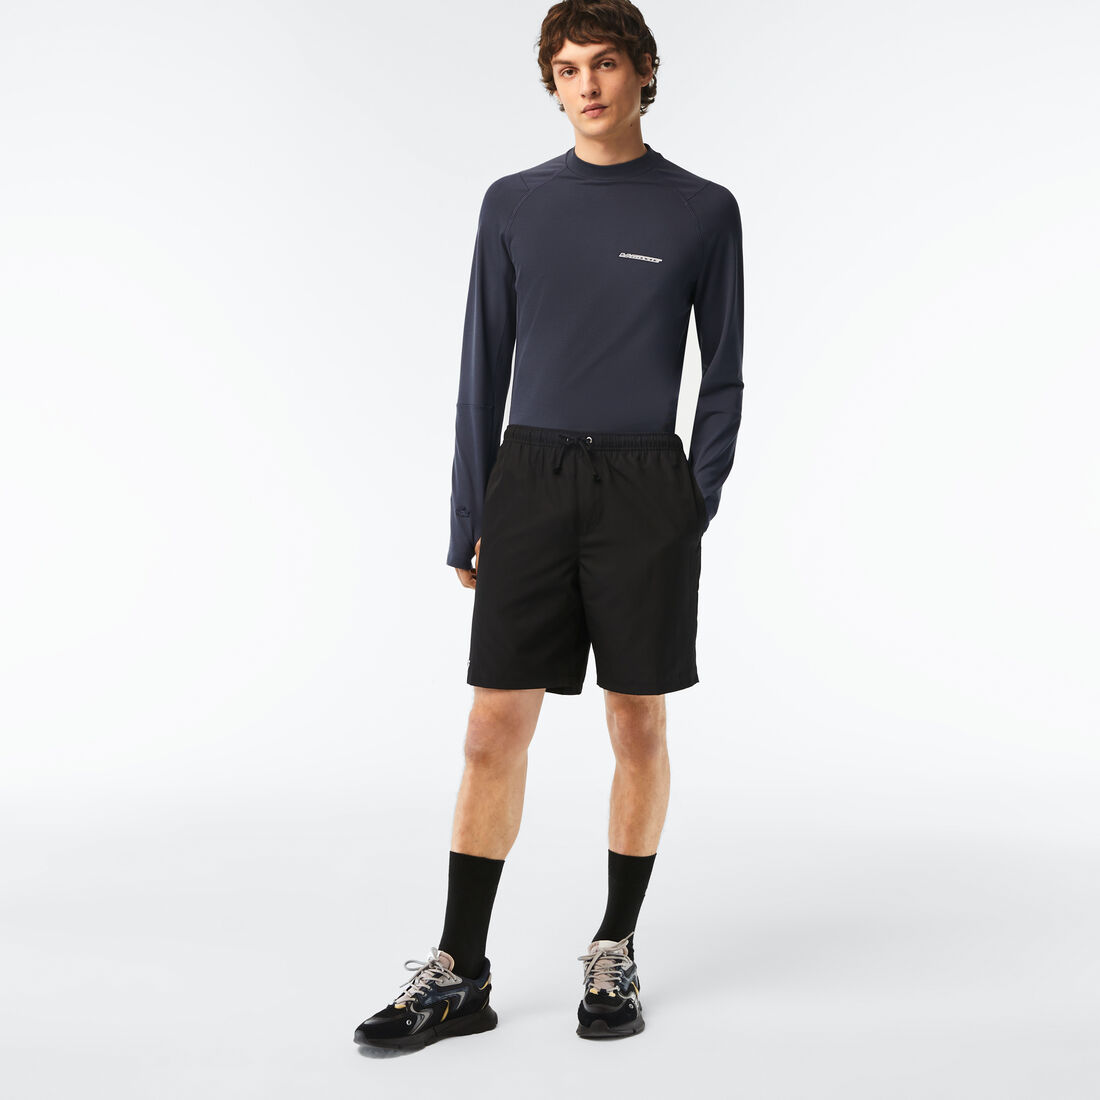 Men's Lacoste SPORT tennis shorts in solid diamond weave taffeta - GH353T-00-031